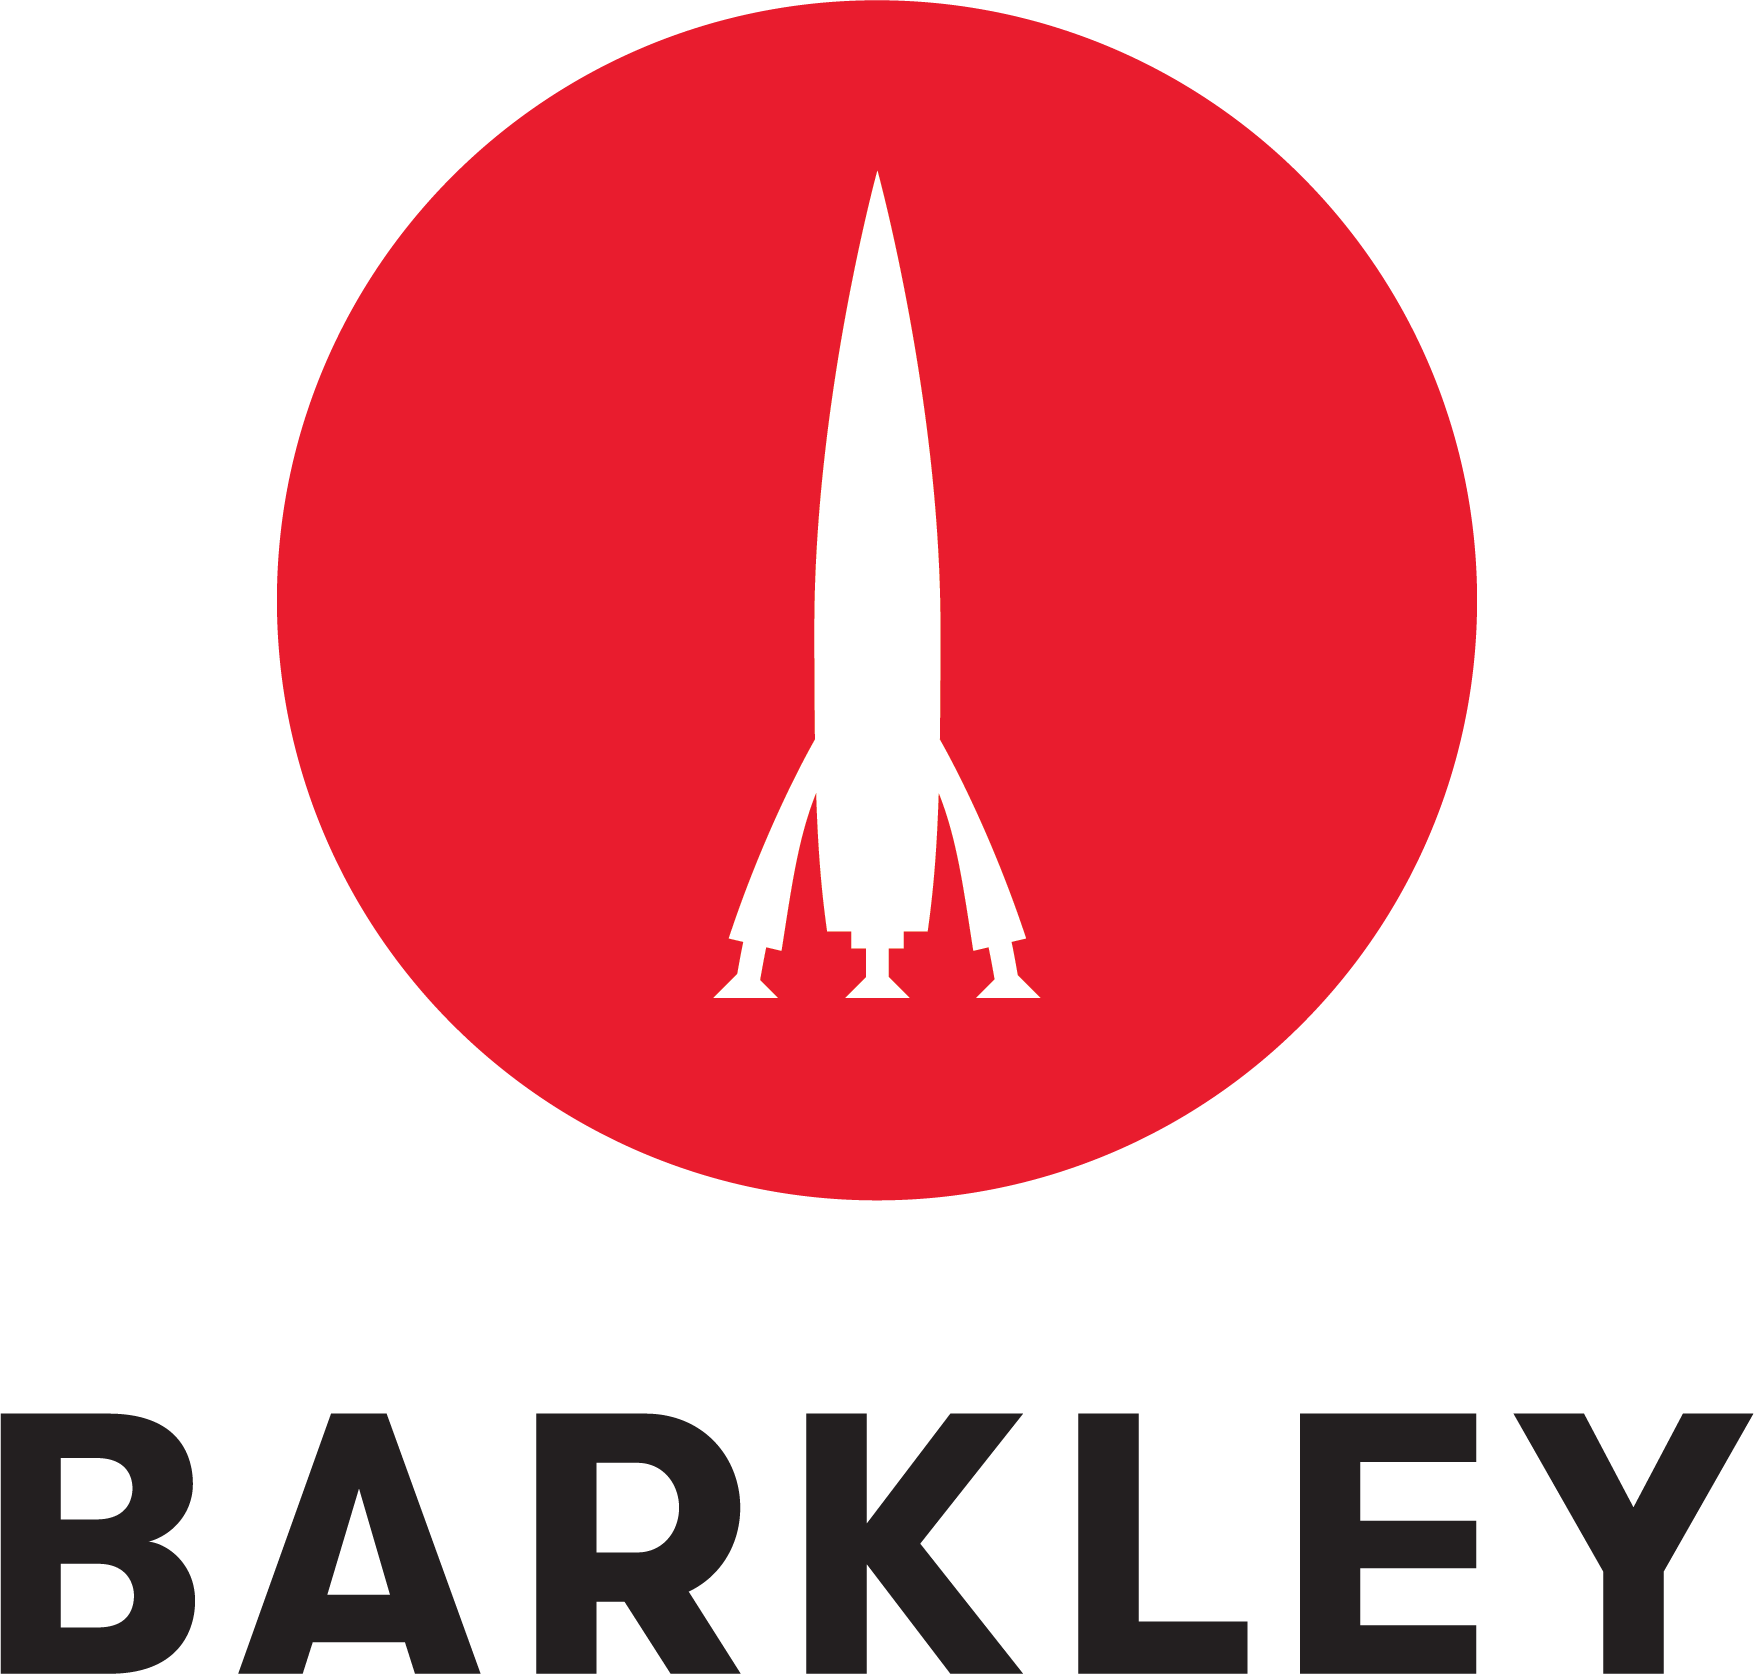 Barkley logo